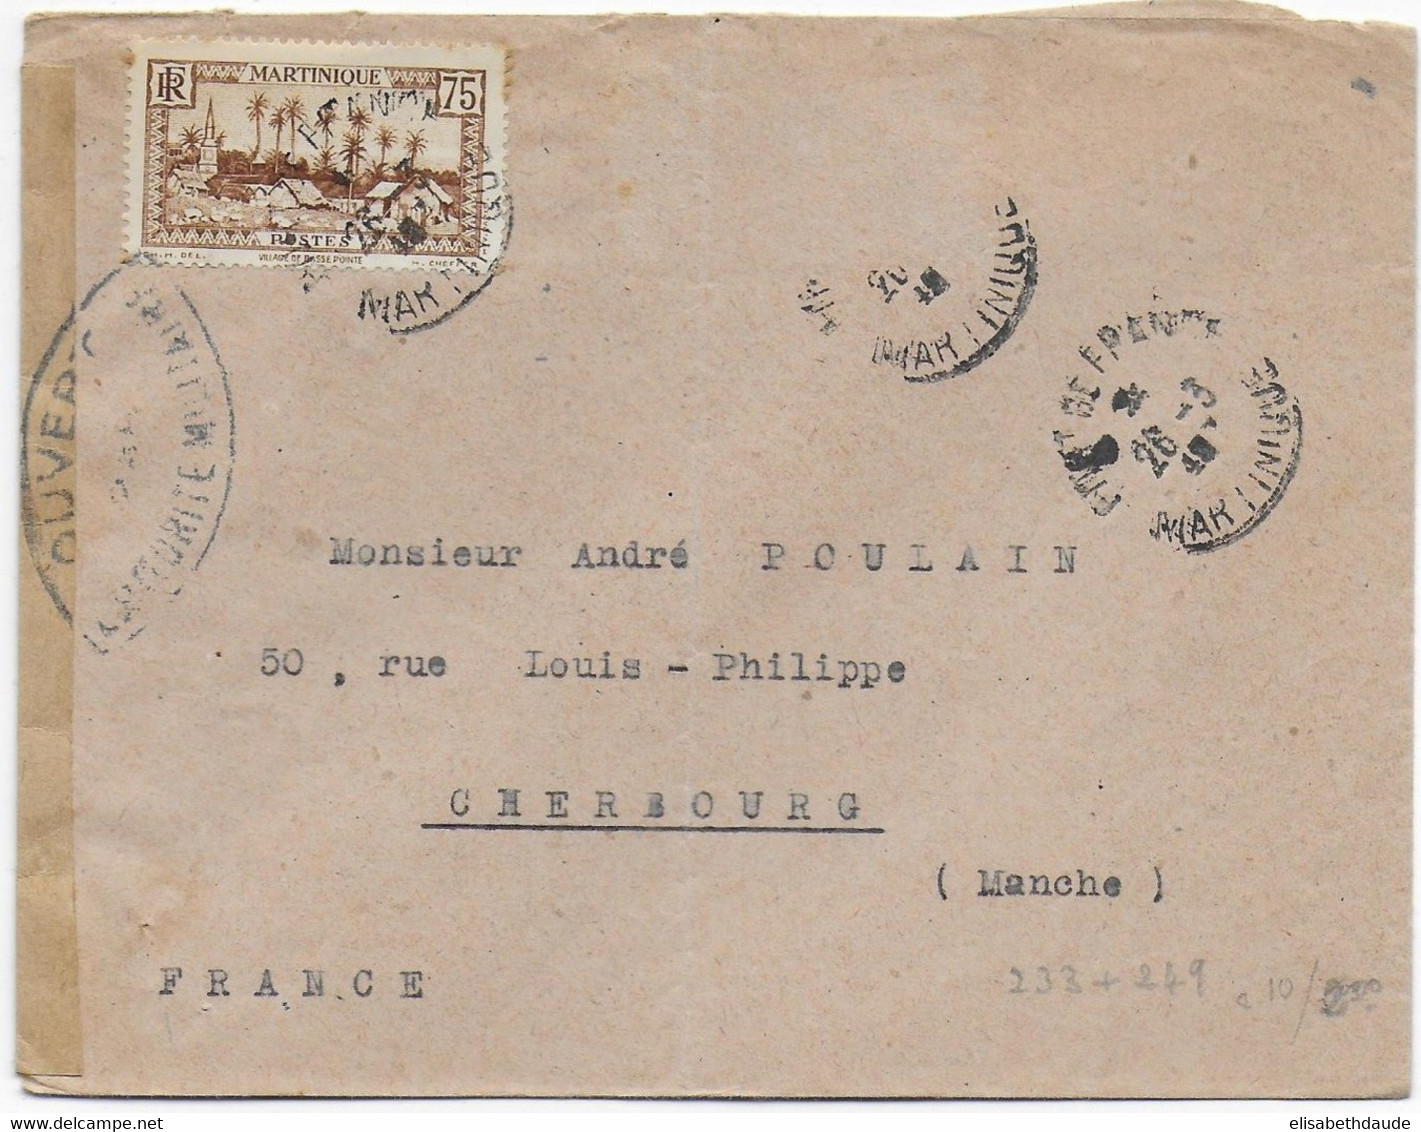 1940 - MARTINIQUE - ENVELOPPE (MANQUE UN TIMBRE) De FORT DE FRANCE Avec CENSURE ! => CHERBOURG (MANCHE) - Lettres & Documents